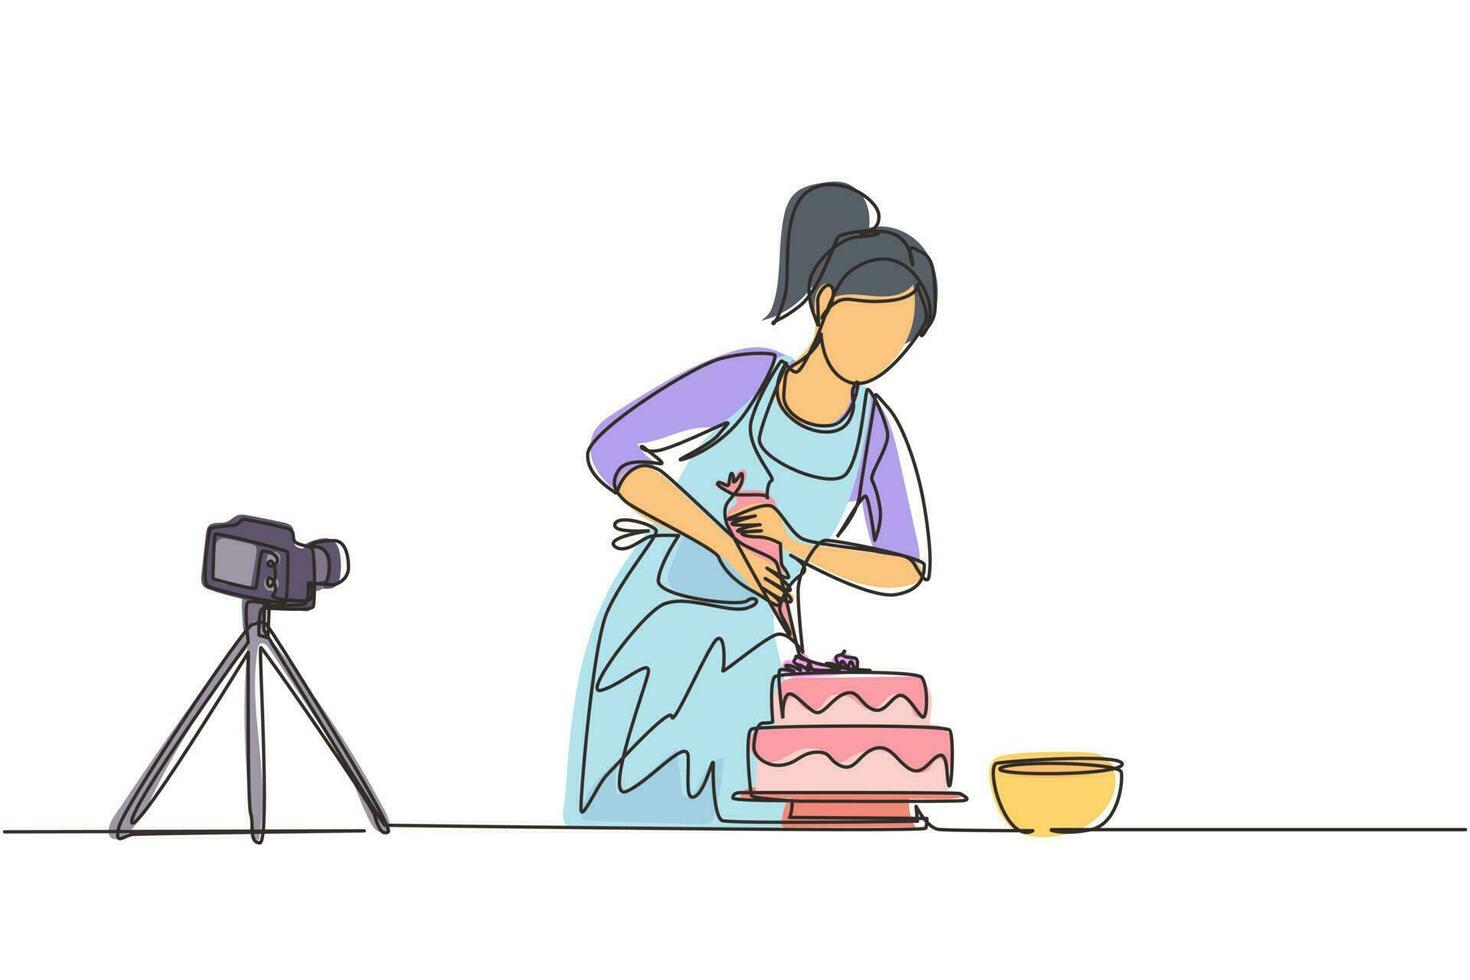 chica de dibujo de una sola línea continua horneando y decorando pasteles en la cocina. mujer bloguera grabando video en cámara, usando trípode, publicándolo en las redes sociales. ilustración de vector de diseño de dibujo de una línea